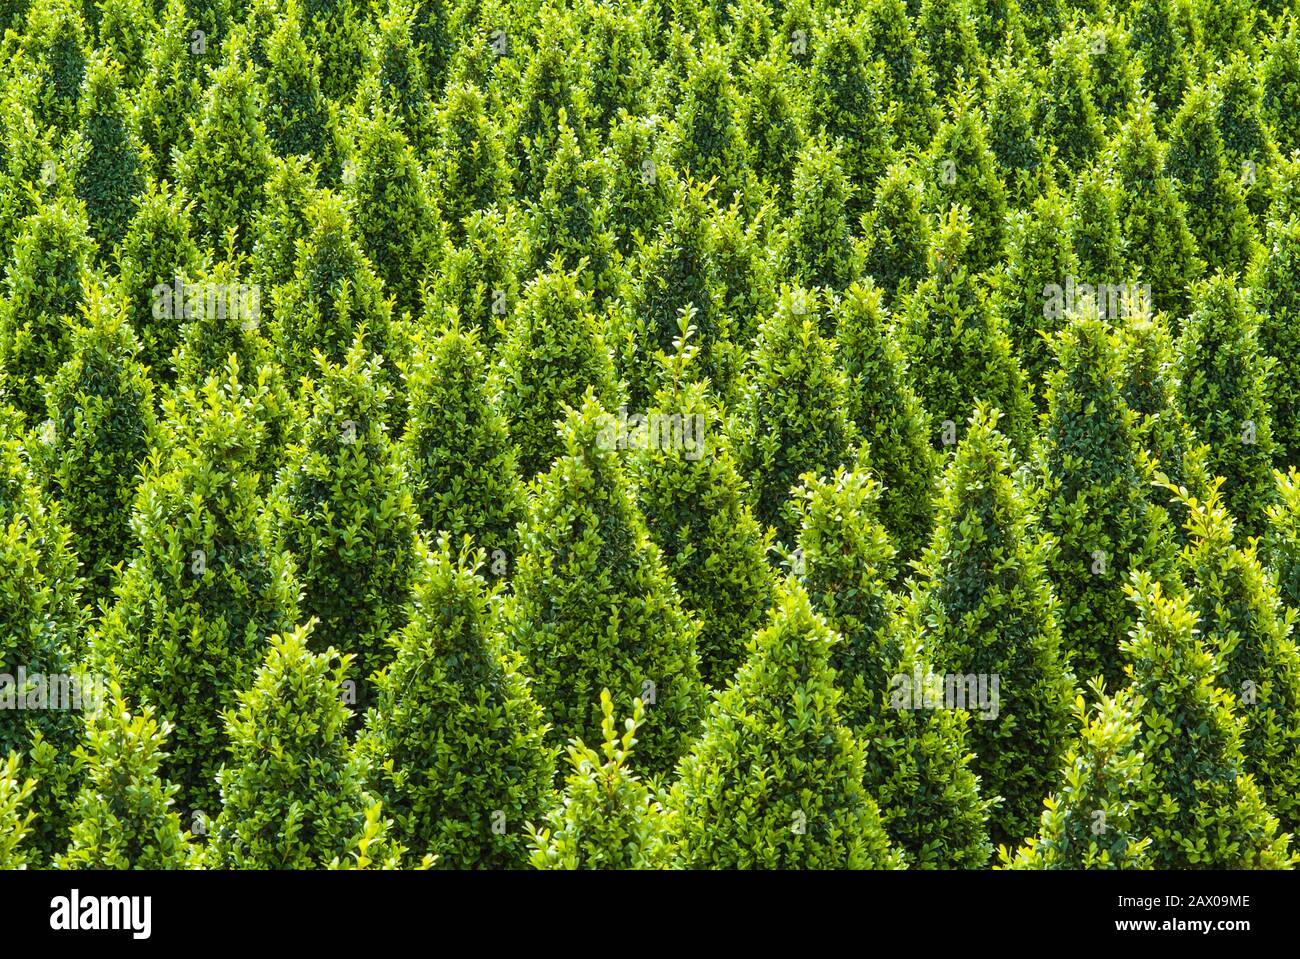 Crecimiento industrial de árboles buxus verdes esculpidos Foto de stock